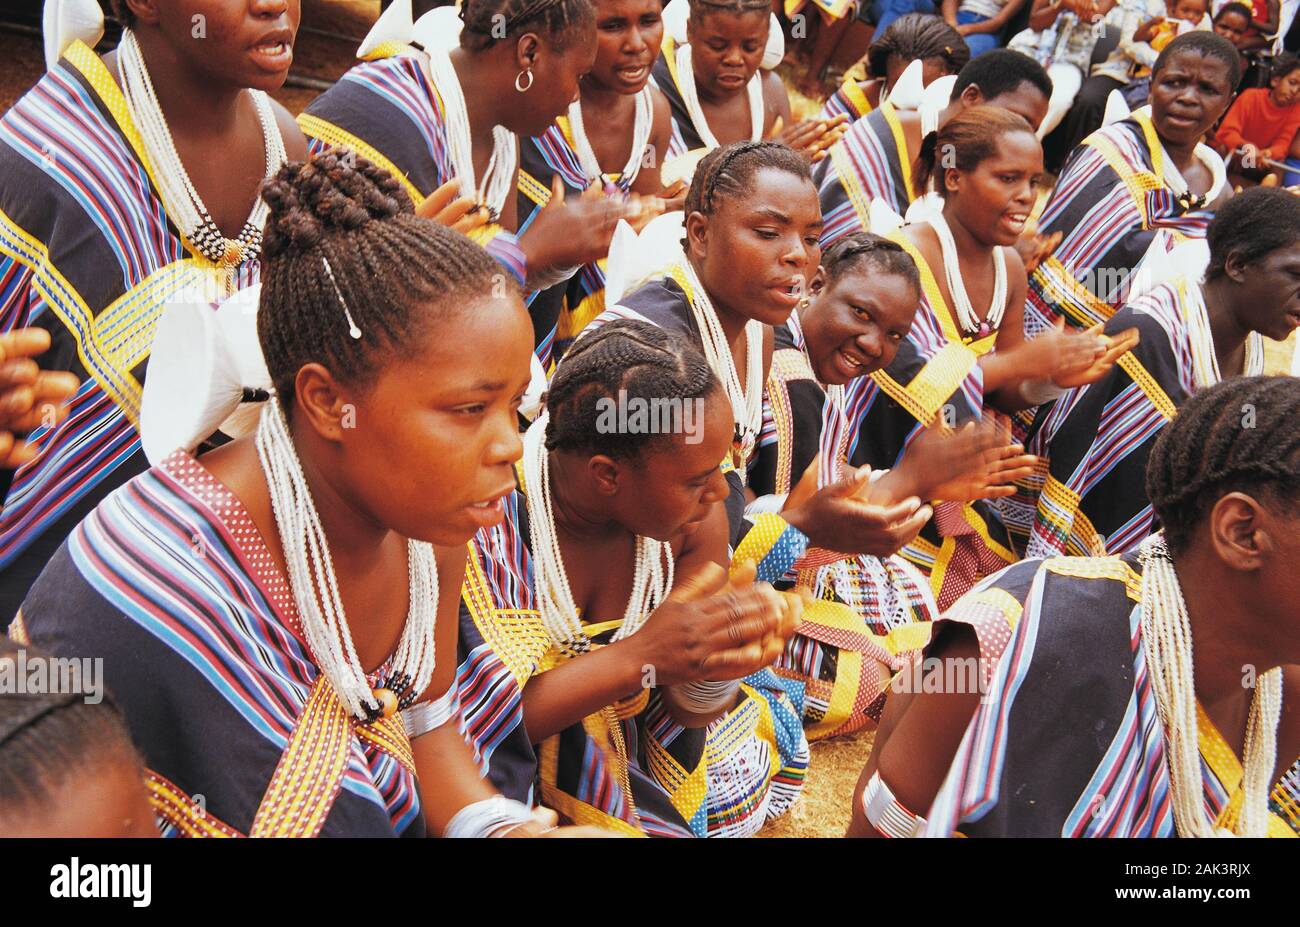 Der Venda mit besonderen Tag Schmuck und in farbigen Kleider für eine traditionelle Feier in der Provinz Limpopo im Norden Südafrikas. (Undatiert Stockfoto